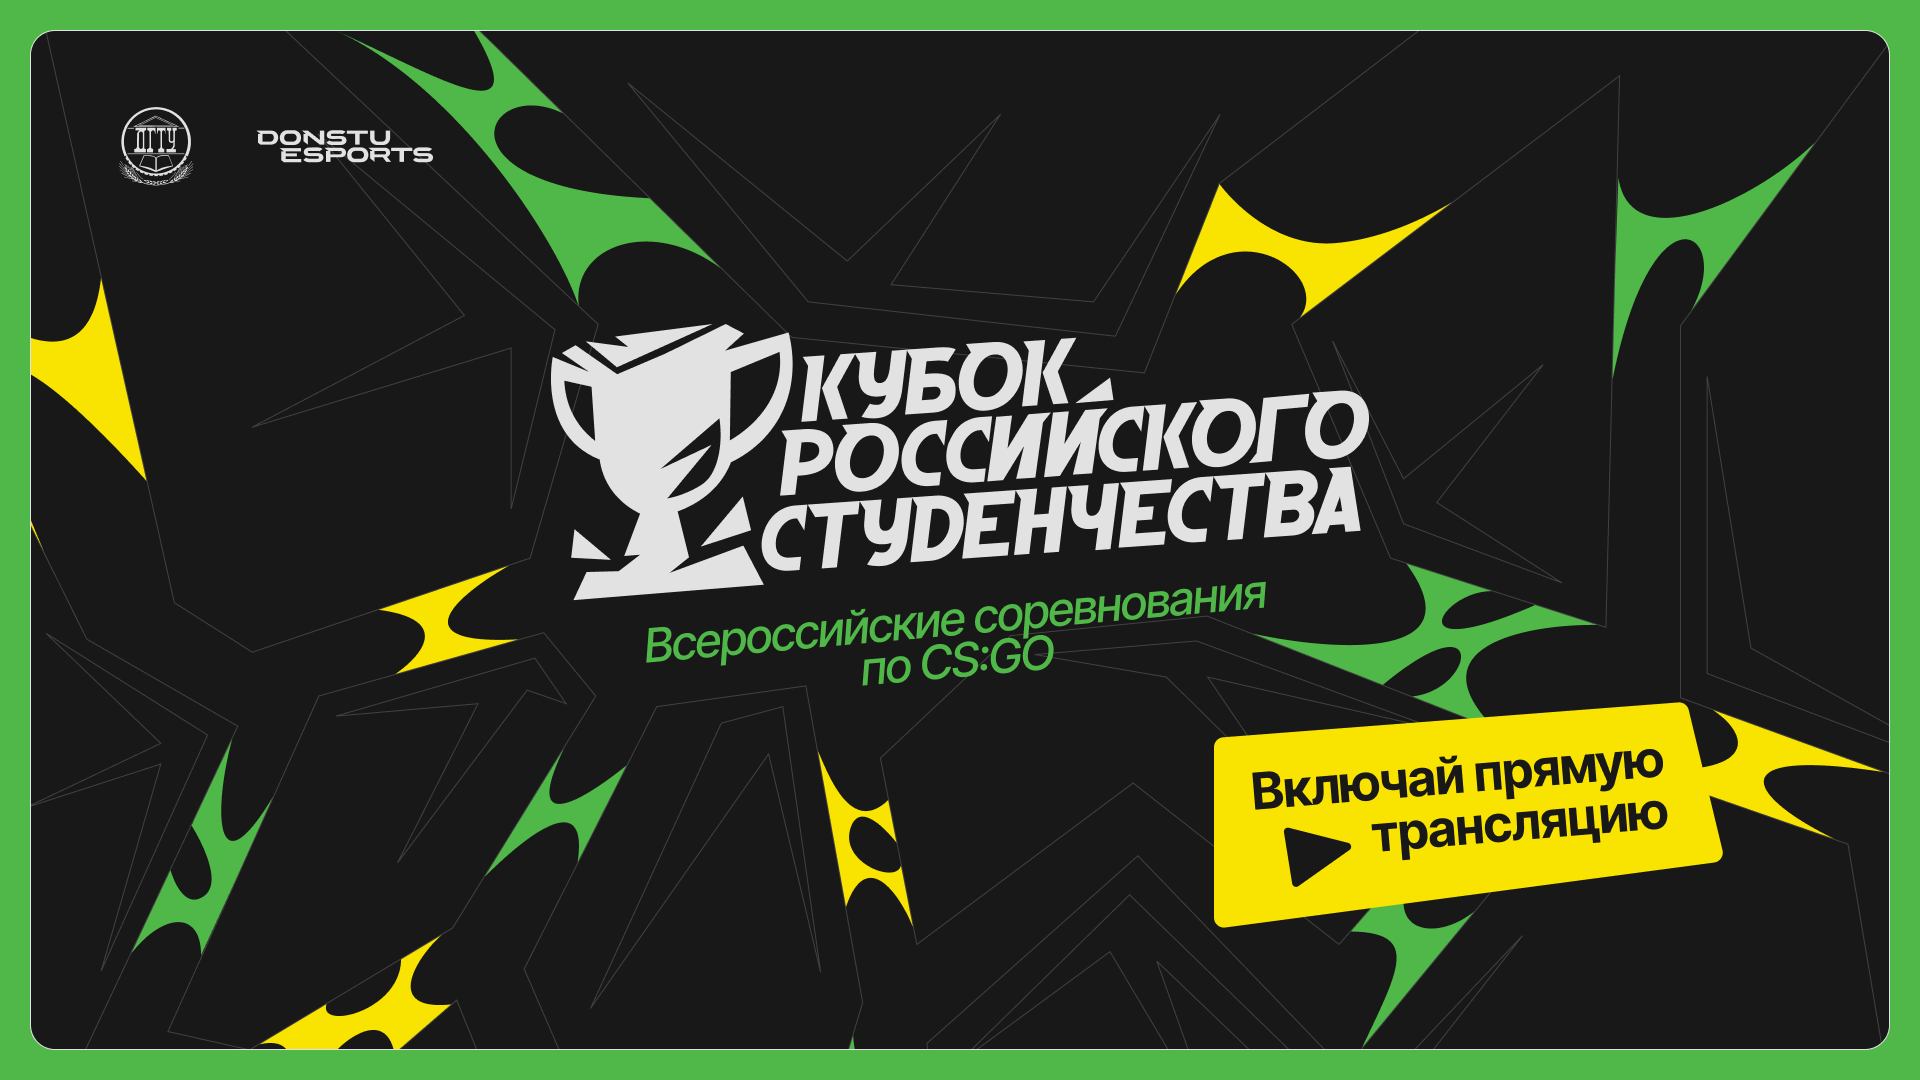 Кубок российского студенчества | ЦФО | Стрим 2 | Donstu Esports